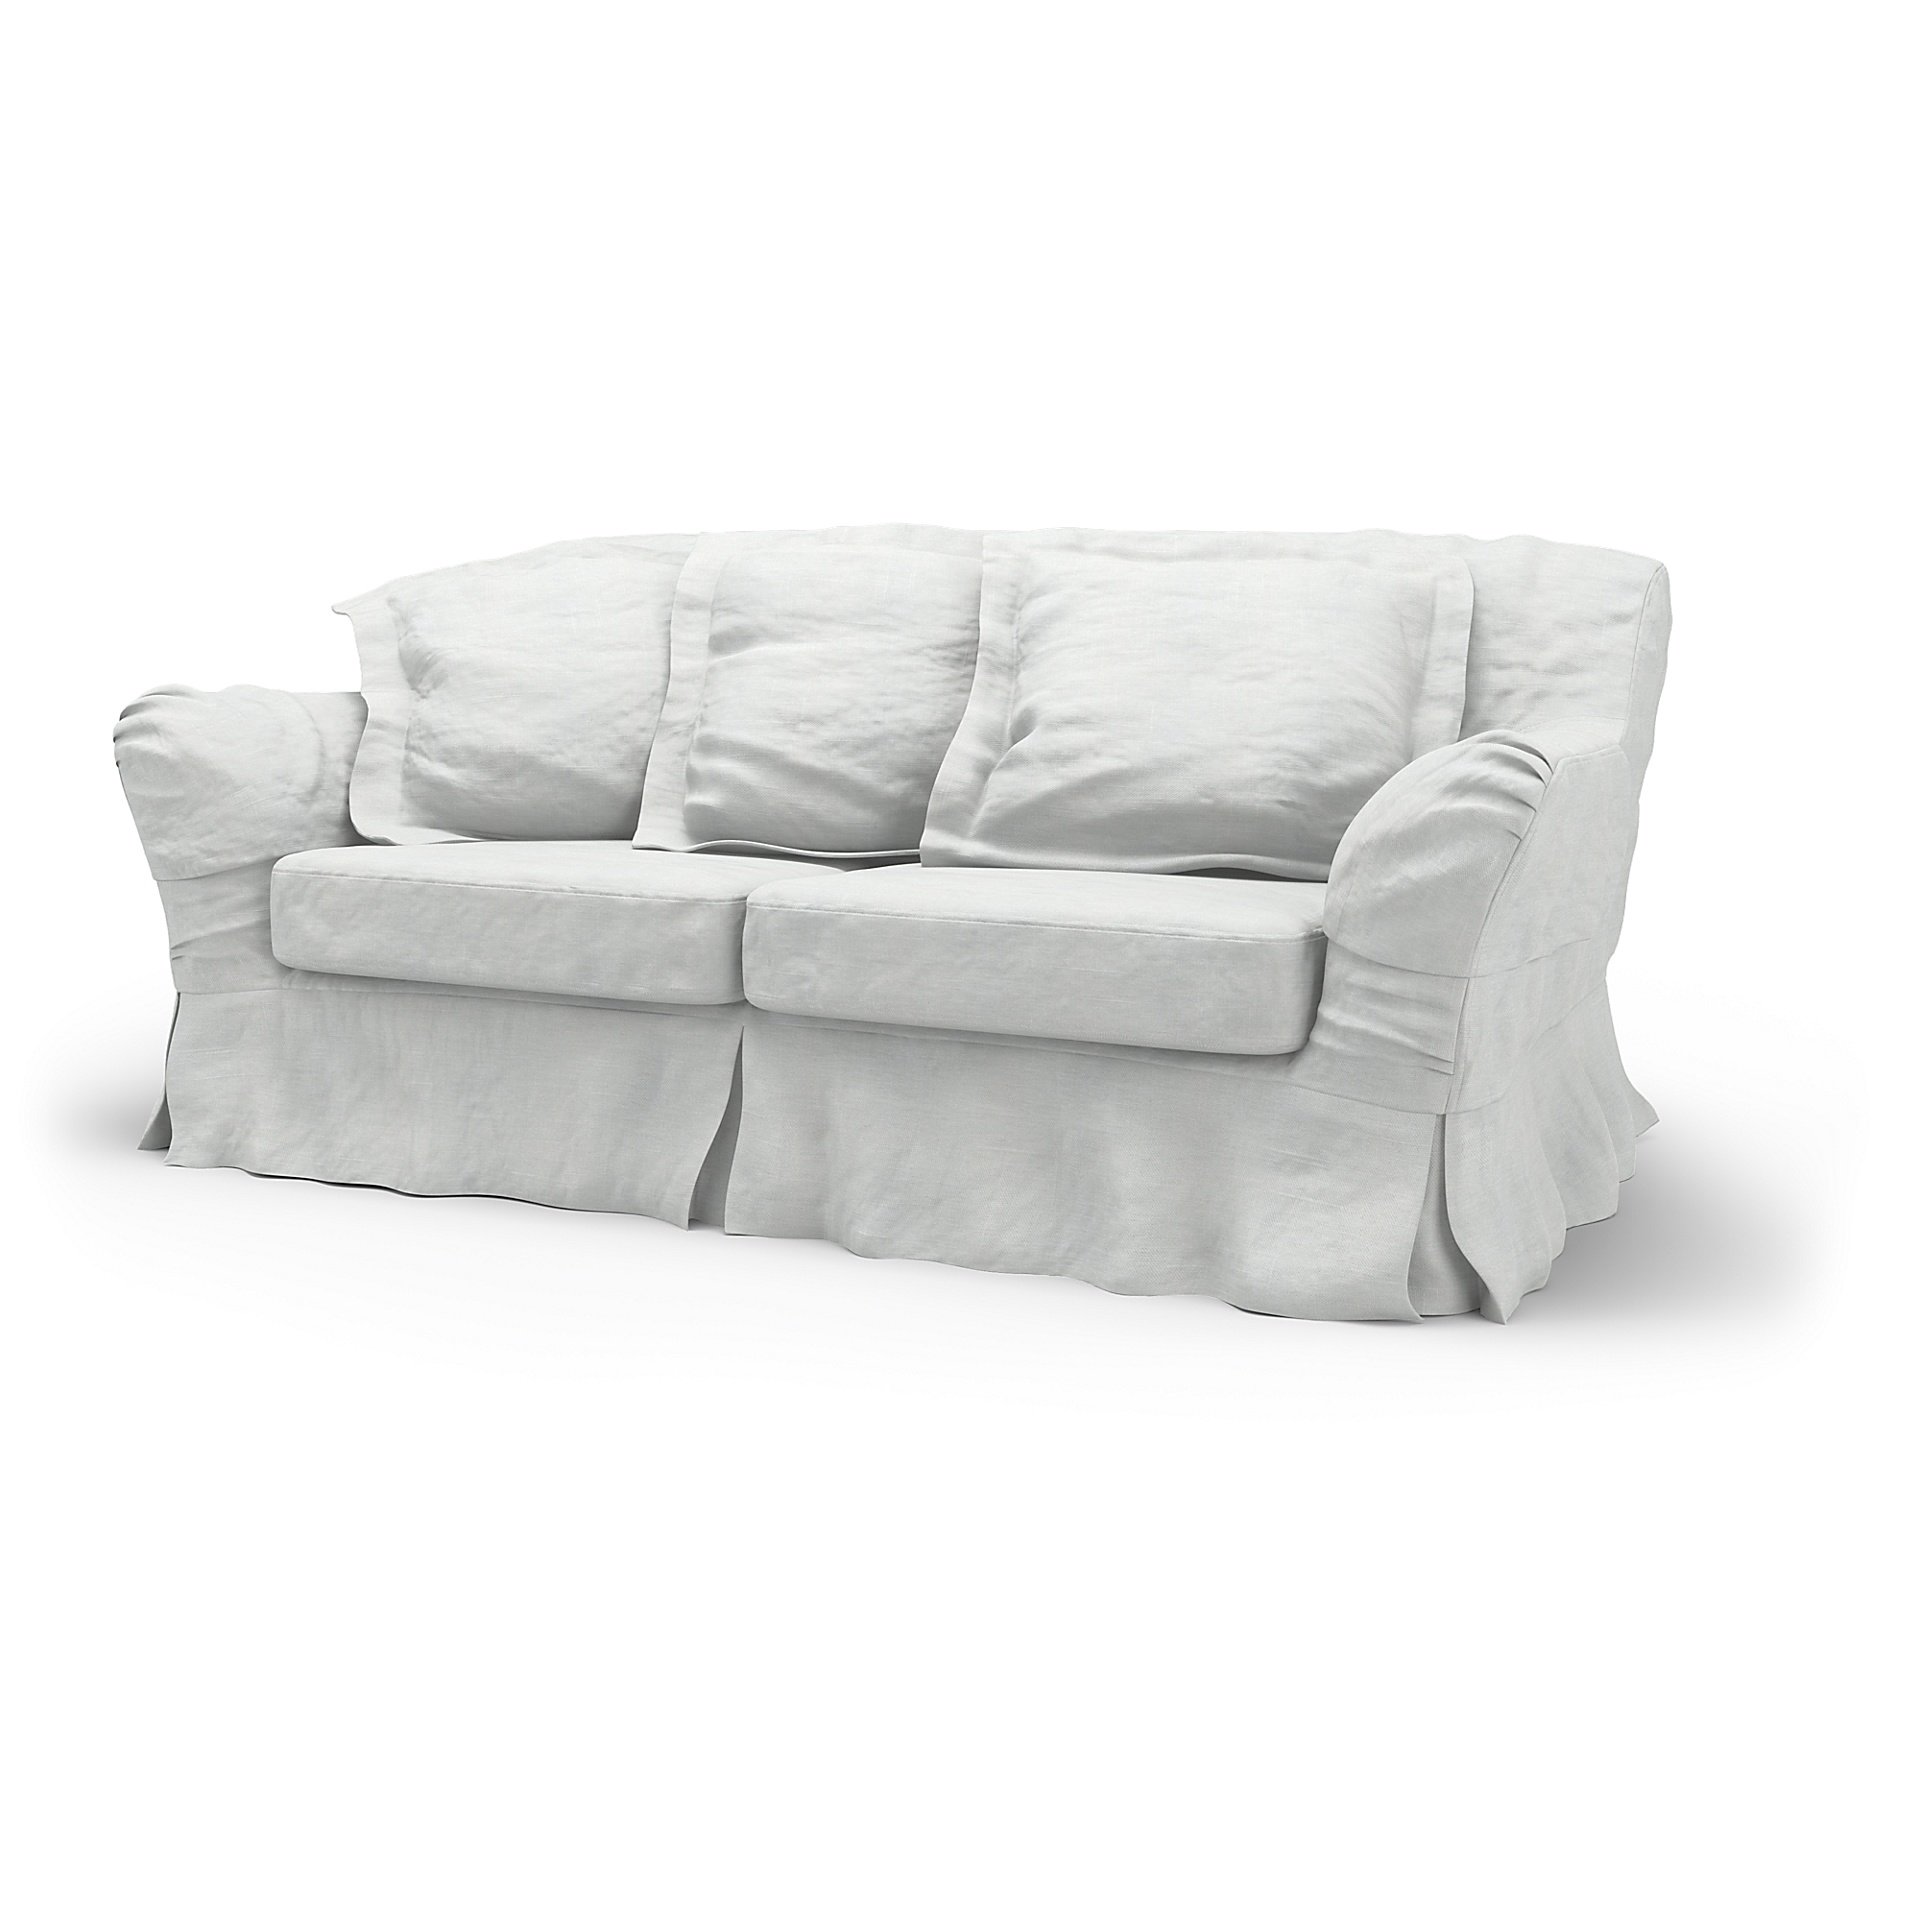 IKEA - Tomelilla 2 Seater Sofa Cover, White, Linen - Bemz